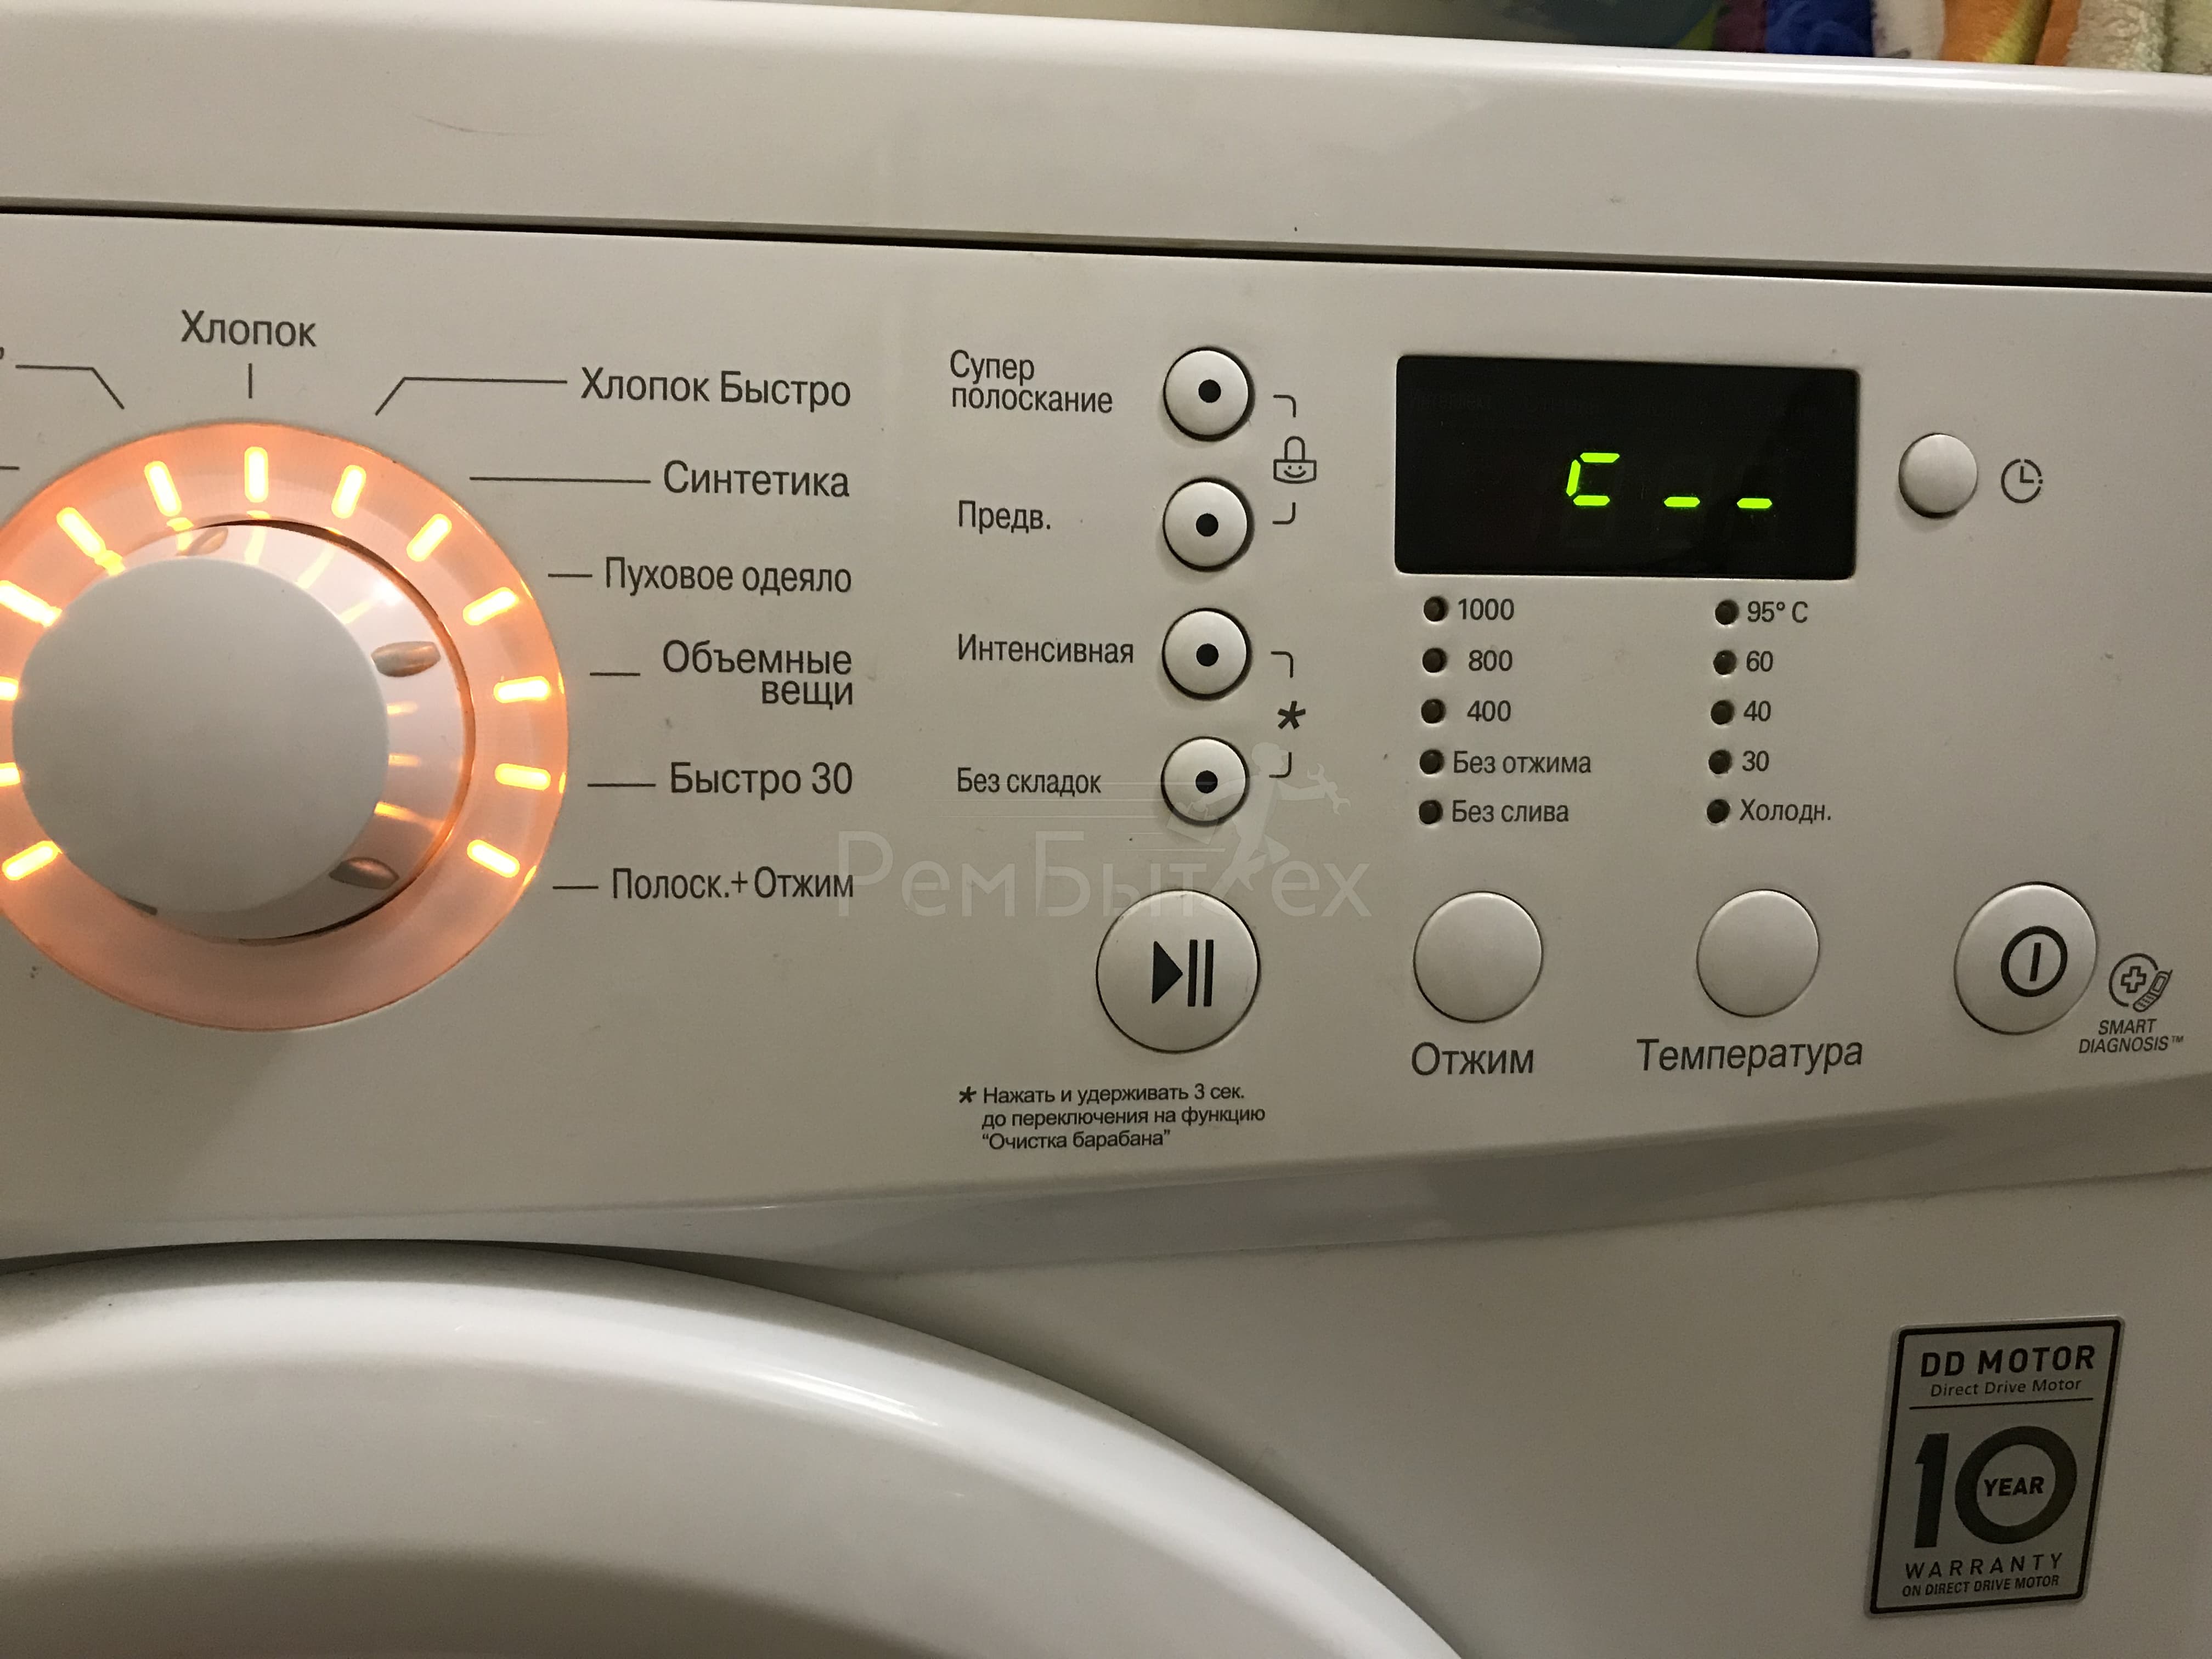 Ошибки стиральной машины lg: коды популярных неисправностей и инструктаж по ремонту